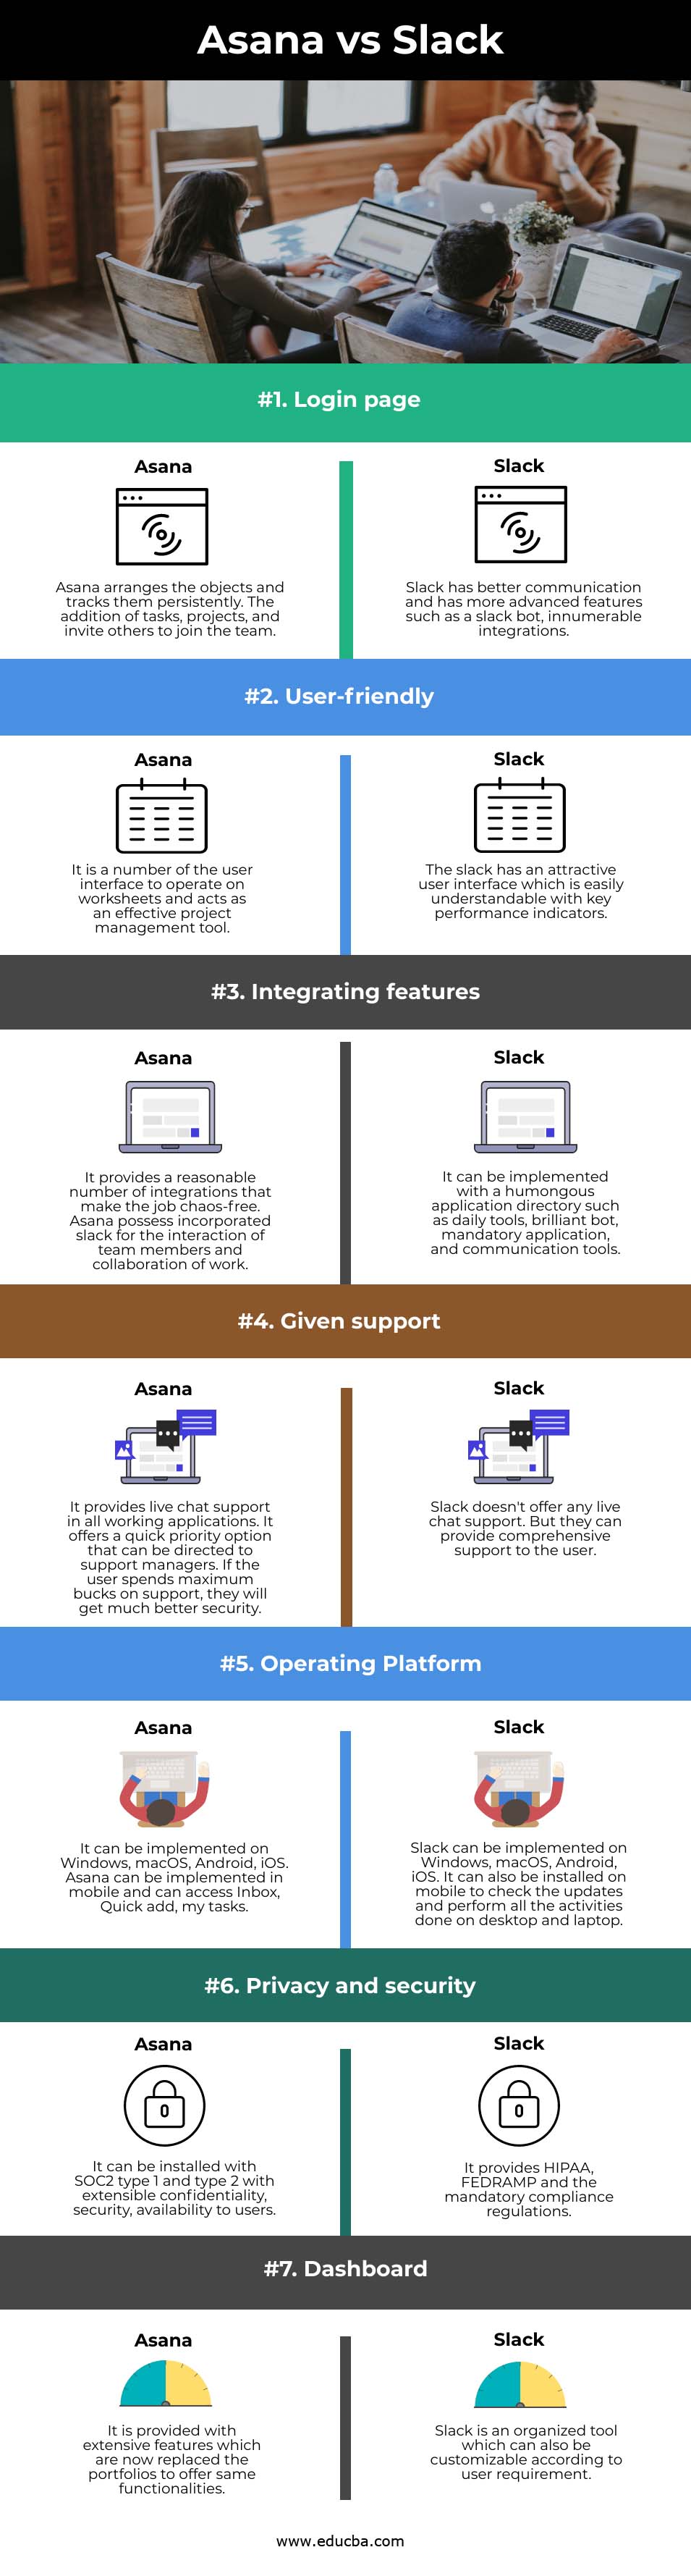 Asana vs Slack info